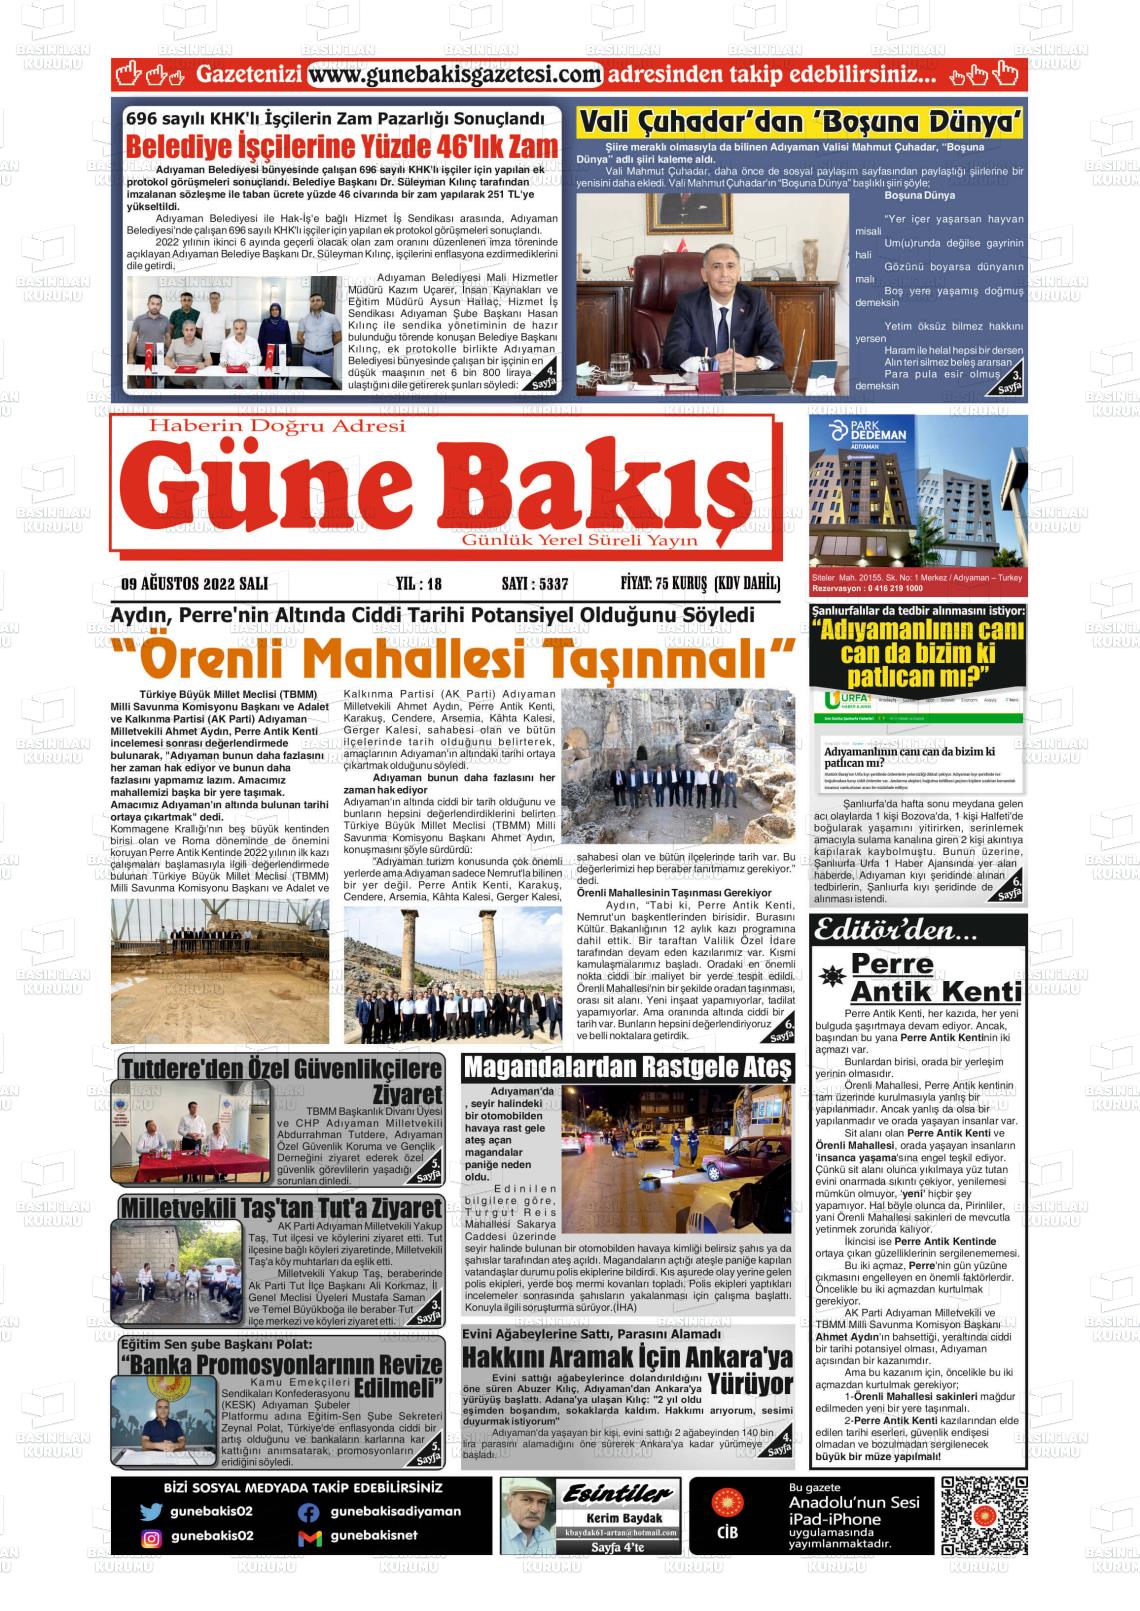 09 Ağustos 2022 Adıyaman Günebakış Gazete Manşeti